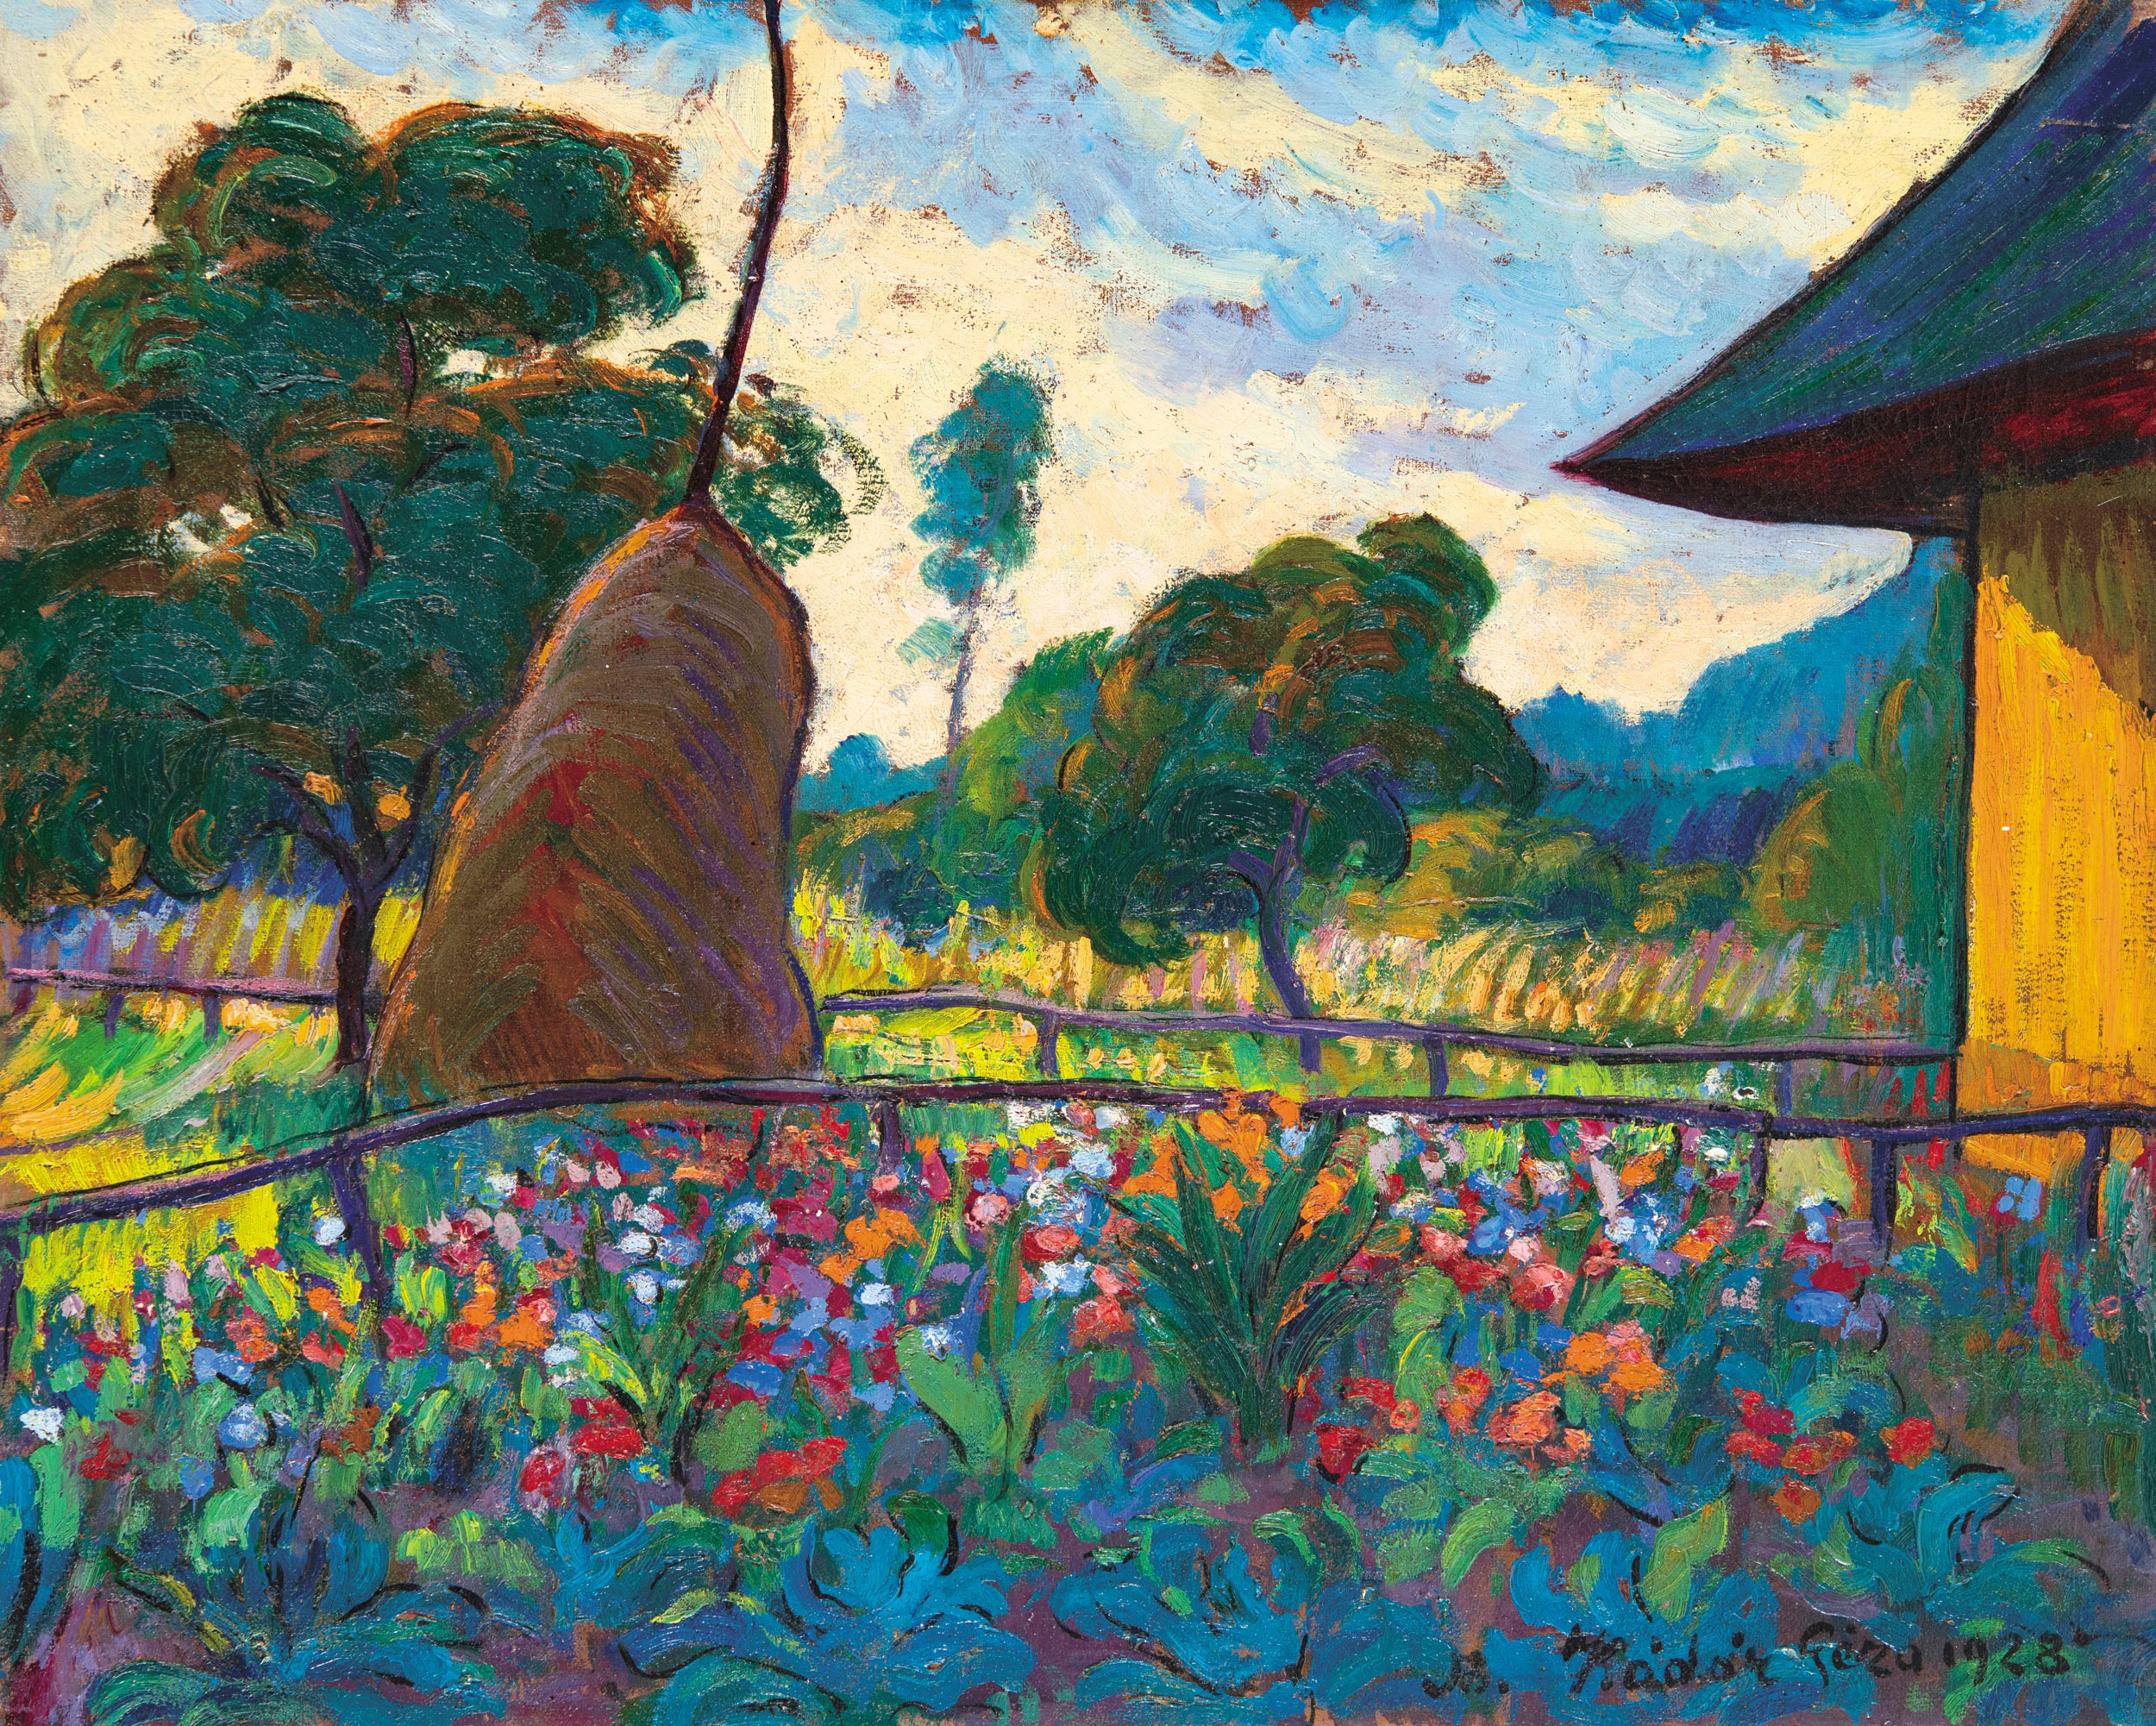 Kádár Géza (1878-1952) Nagybánya (Baia Mare) at Summer (Flowers in the Shadow of the Garden Rick), 1928